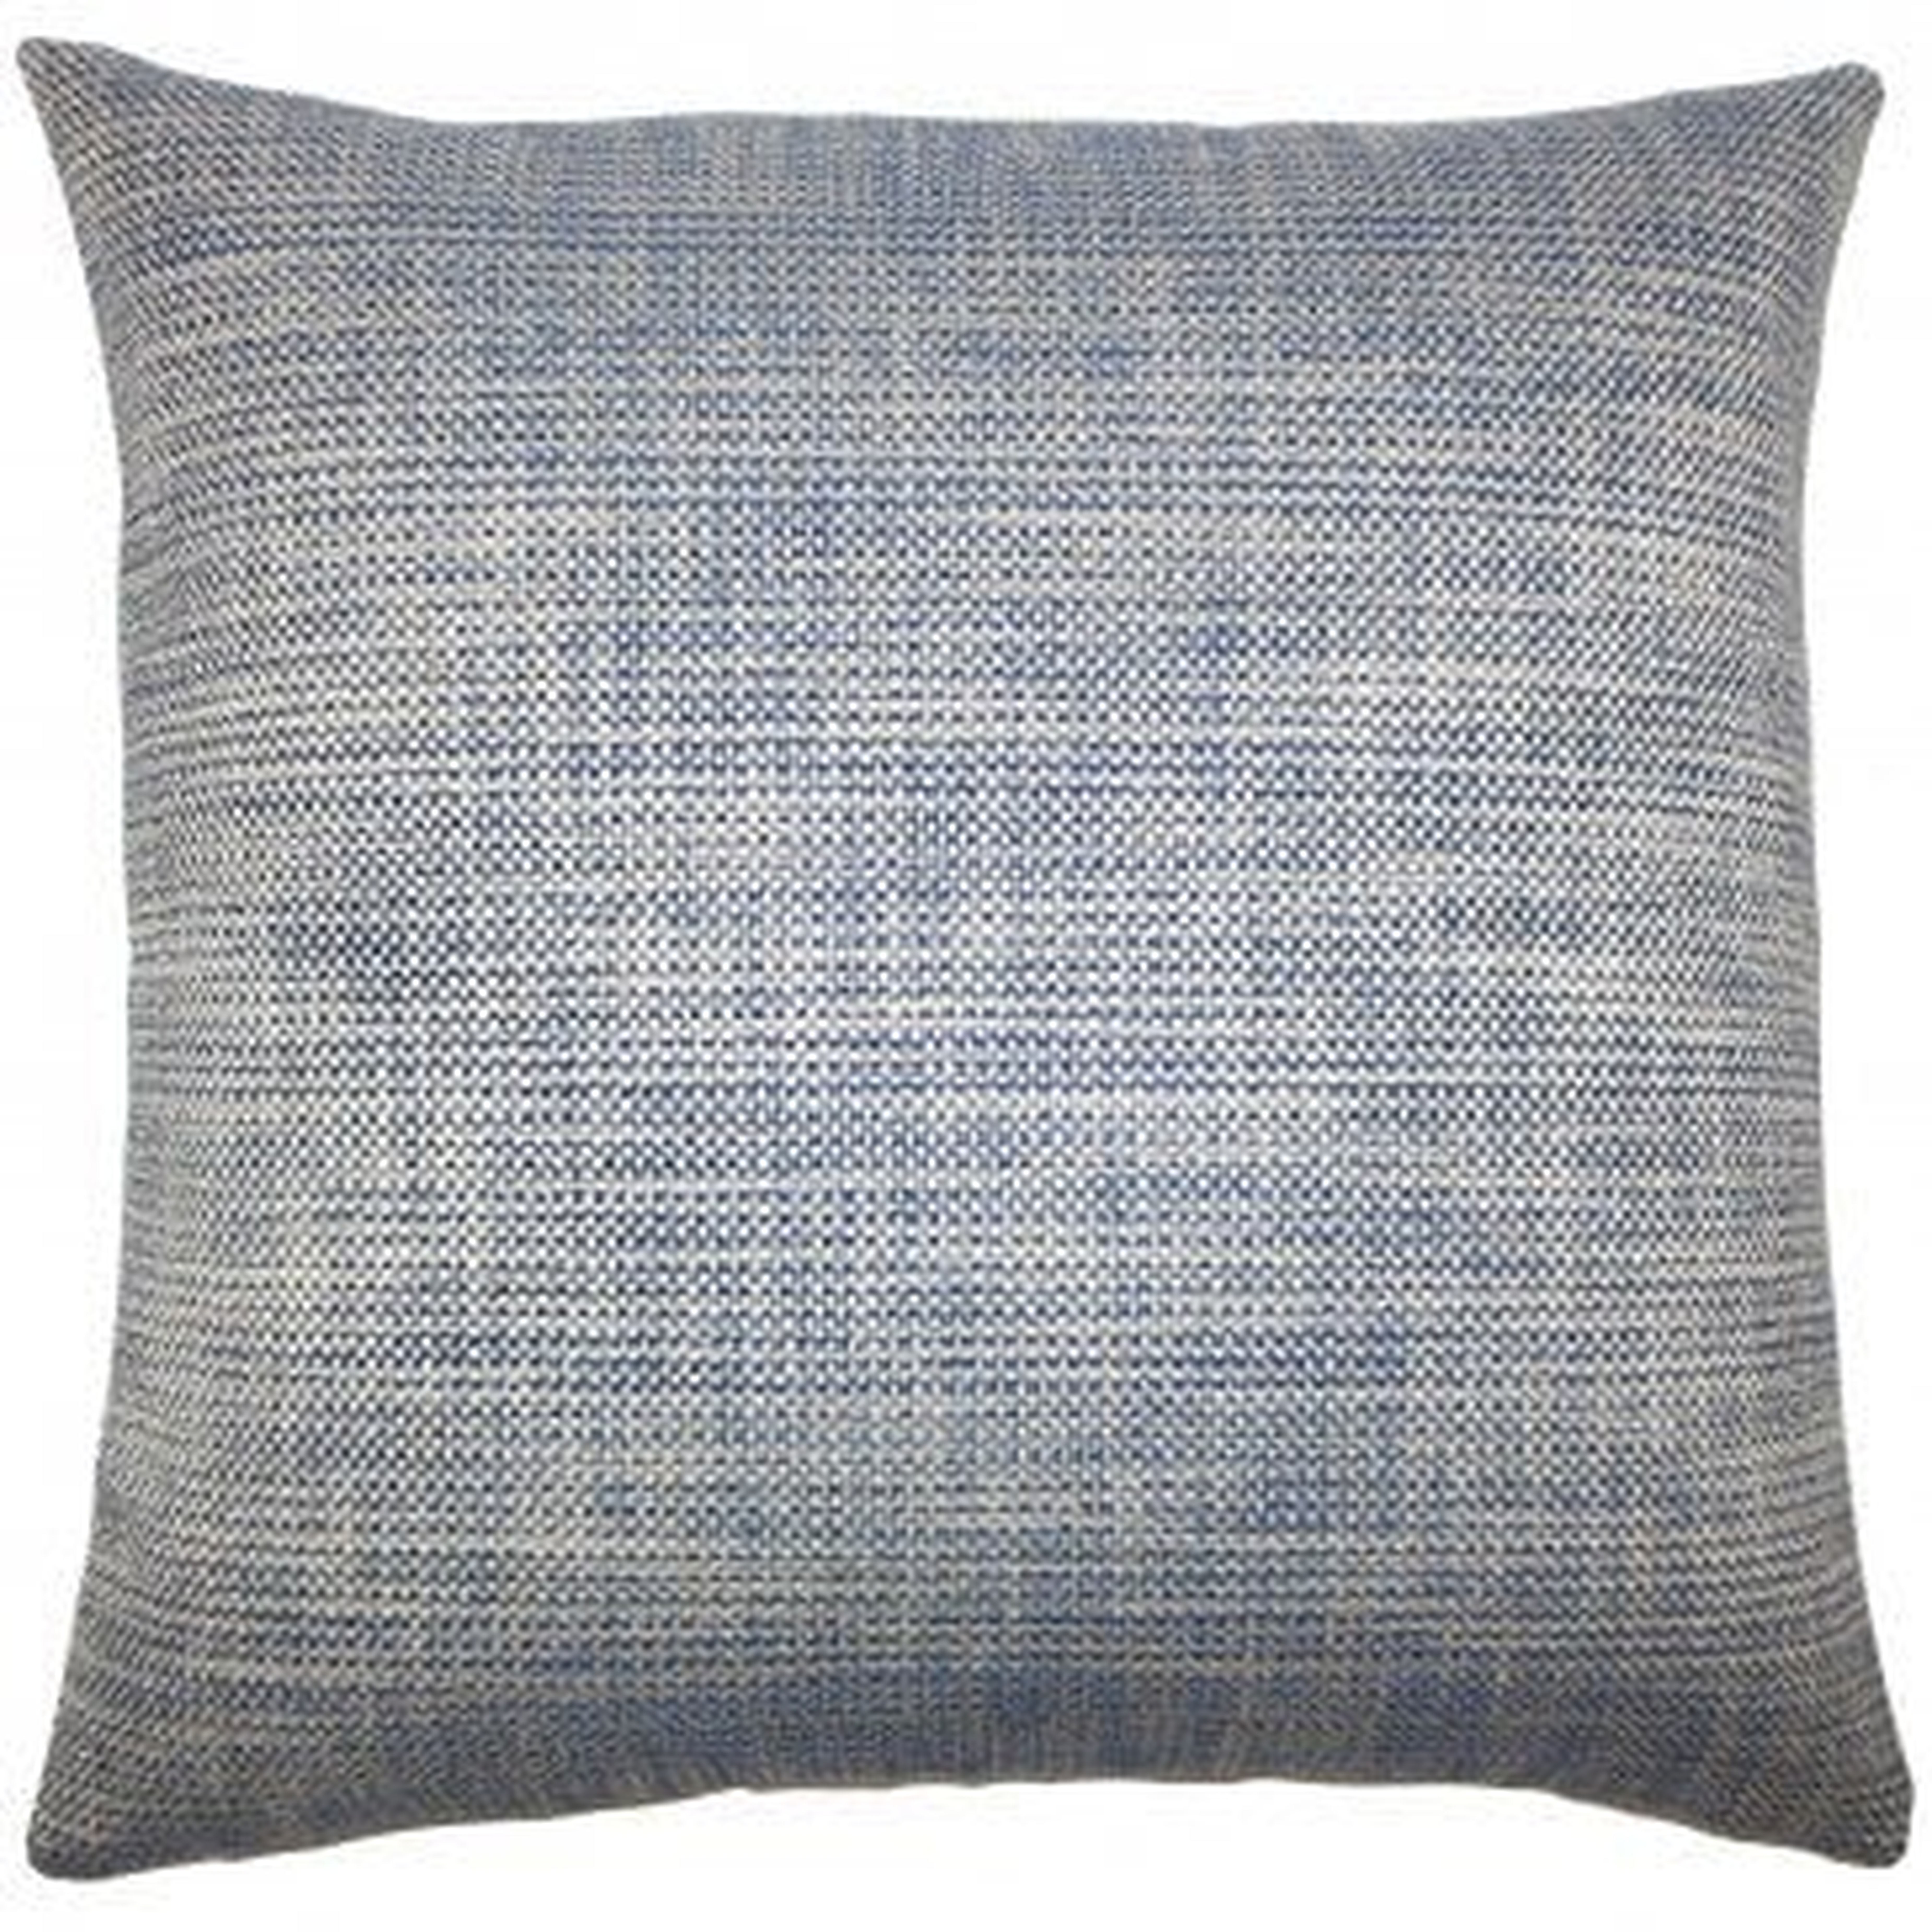 Daker Weave Pillow Indigo - Linen & Seam